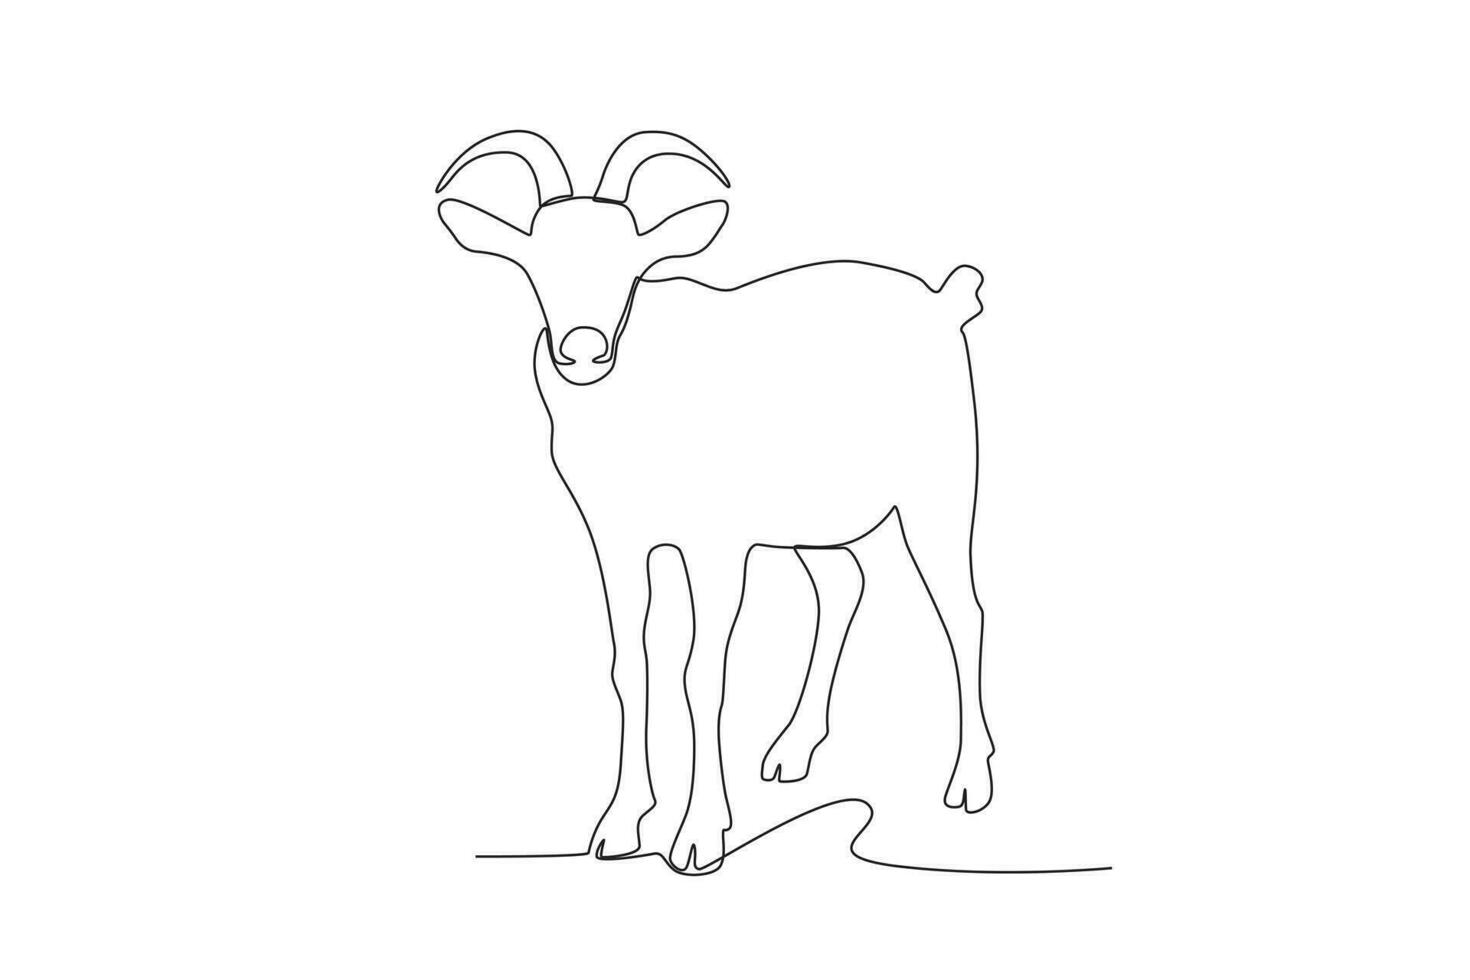 soltero uno línea dibujo de un cabra. continuo línea dibujar diseño gráfico vector ilustración.